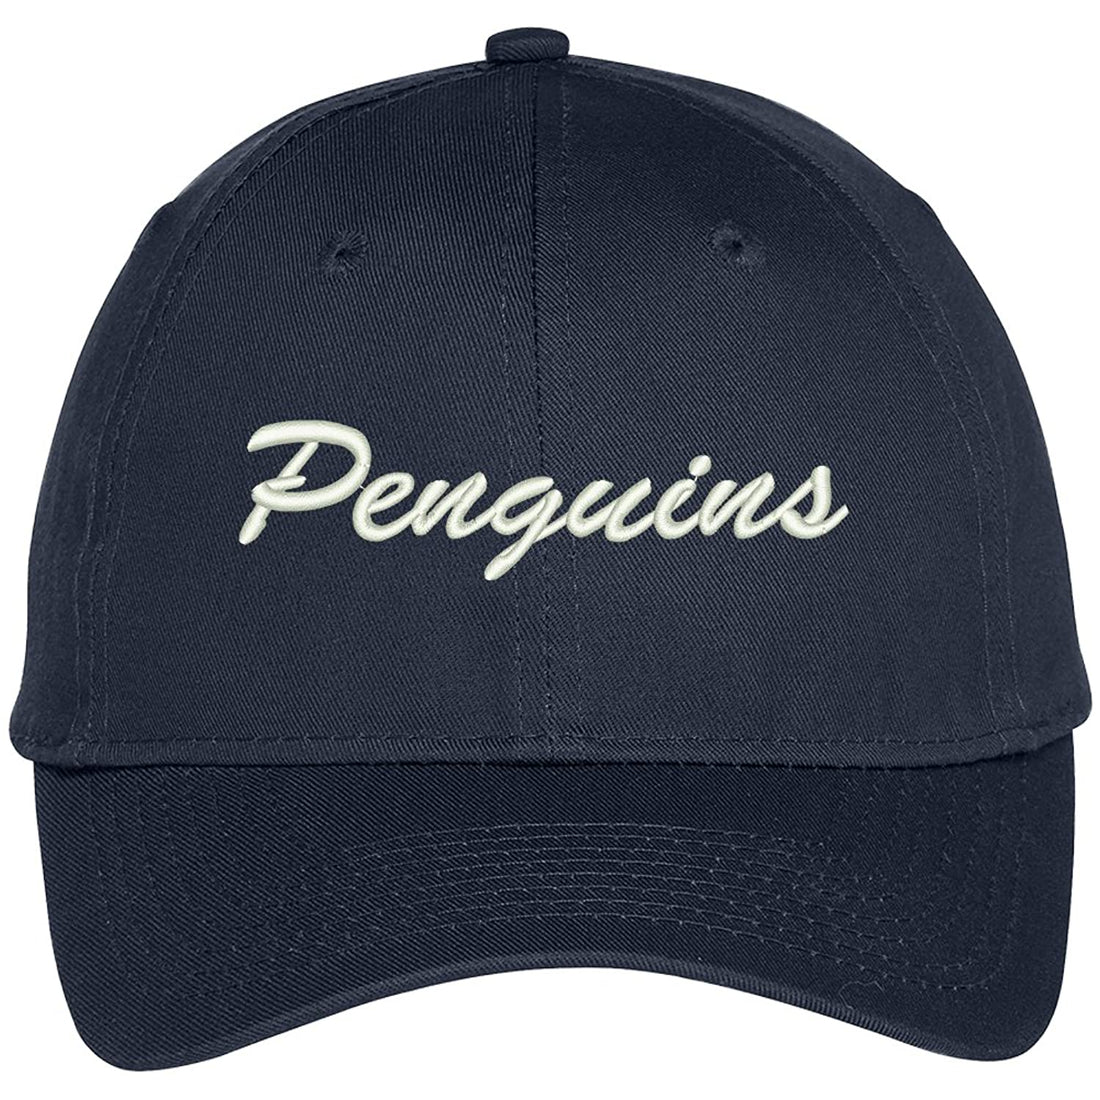 Trendy Apparel Shop Penguins Embroidered Precurved Adjustable Cap